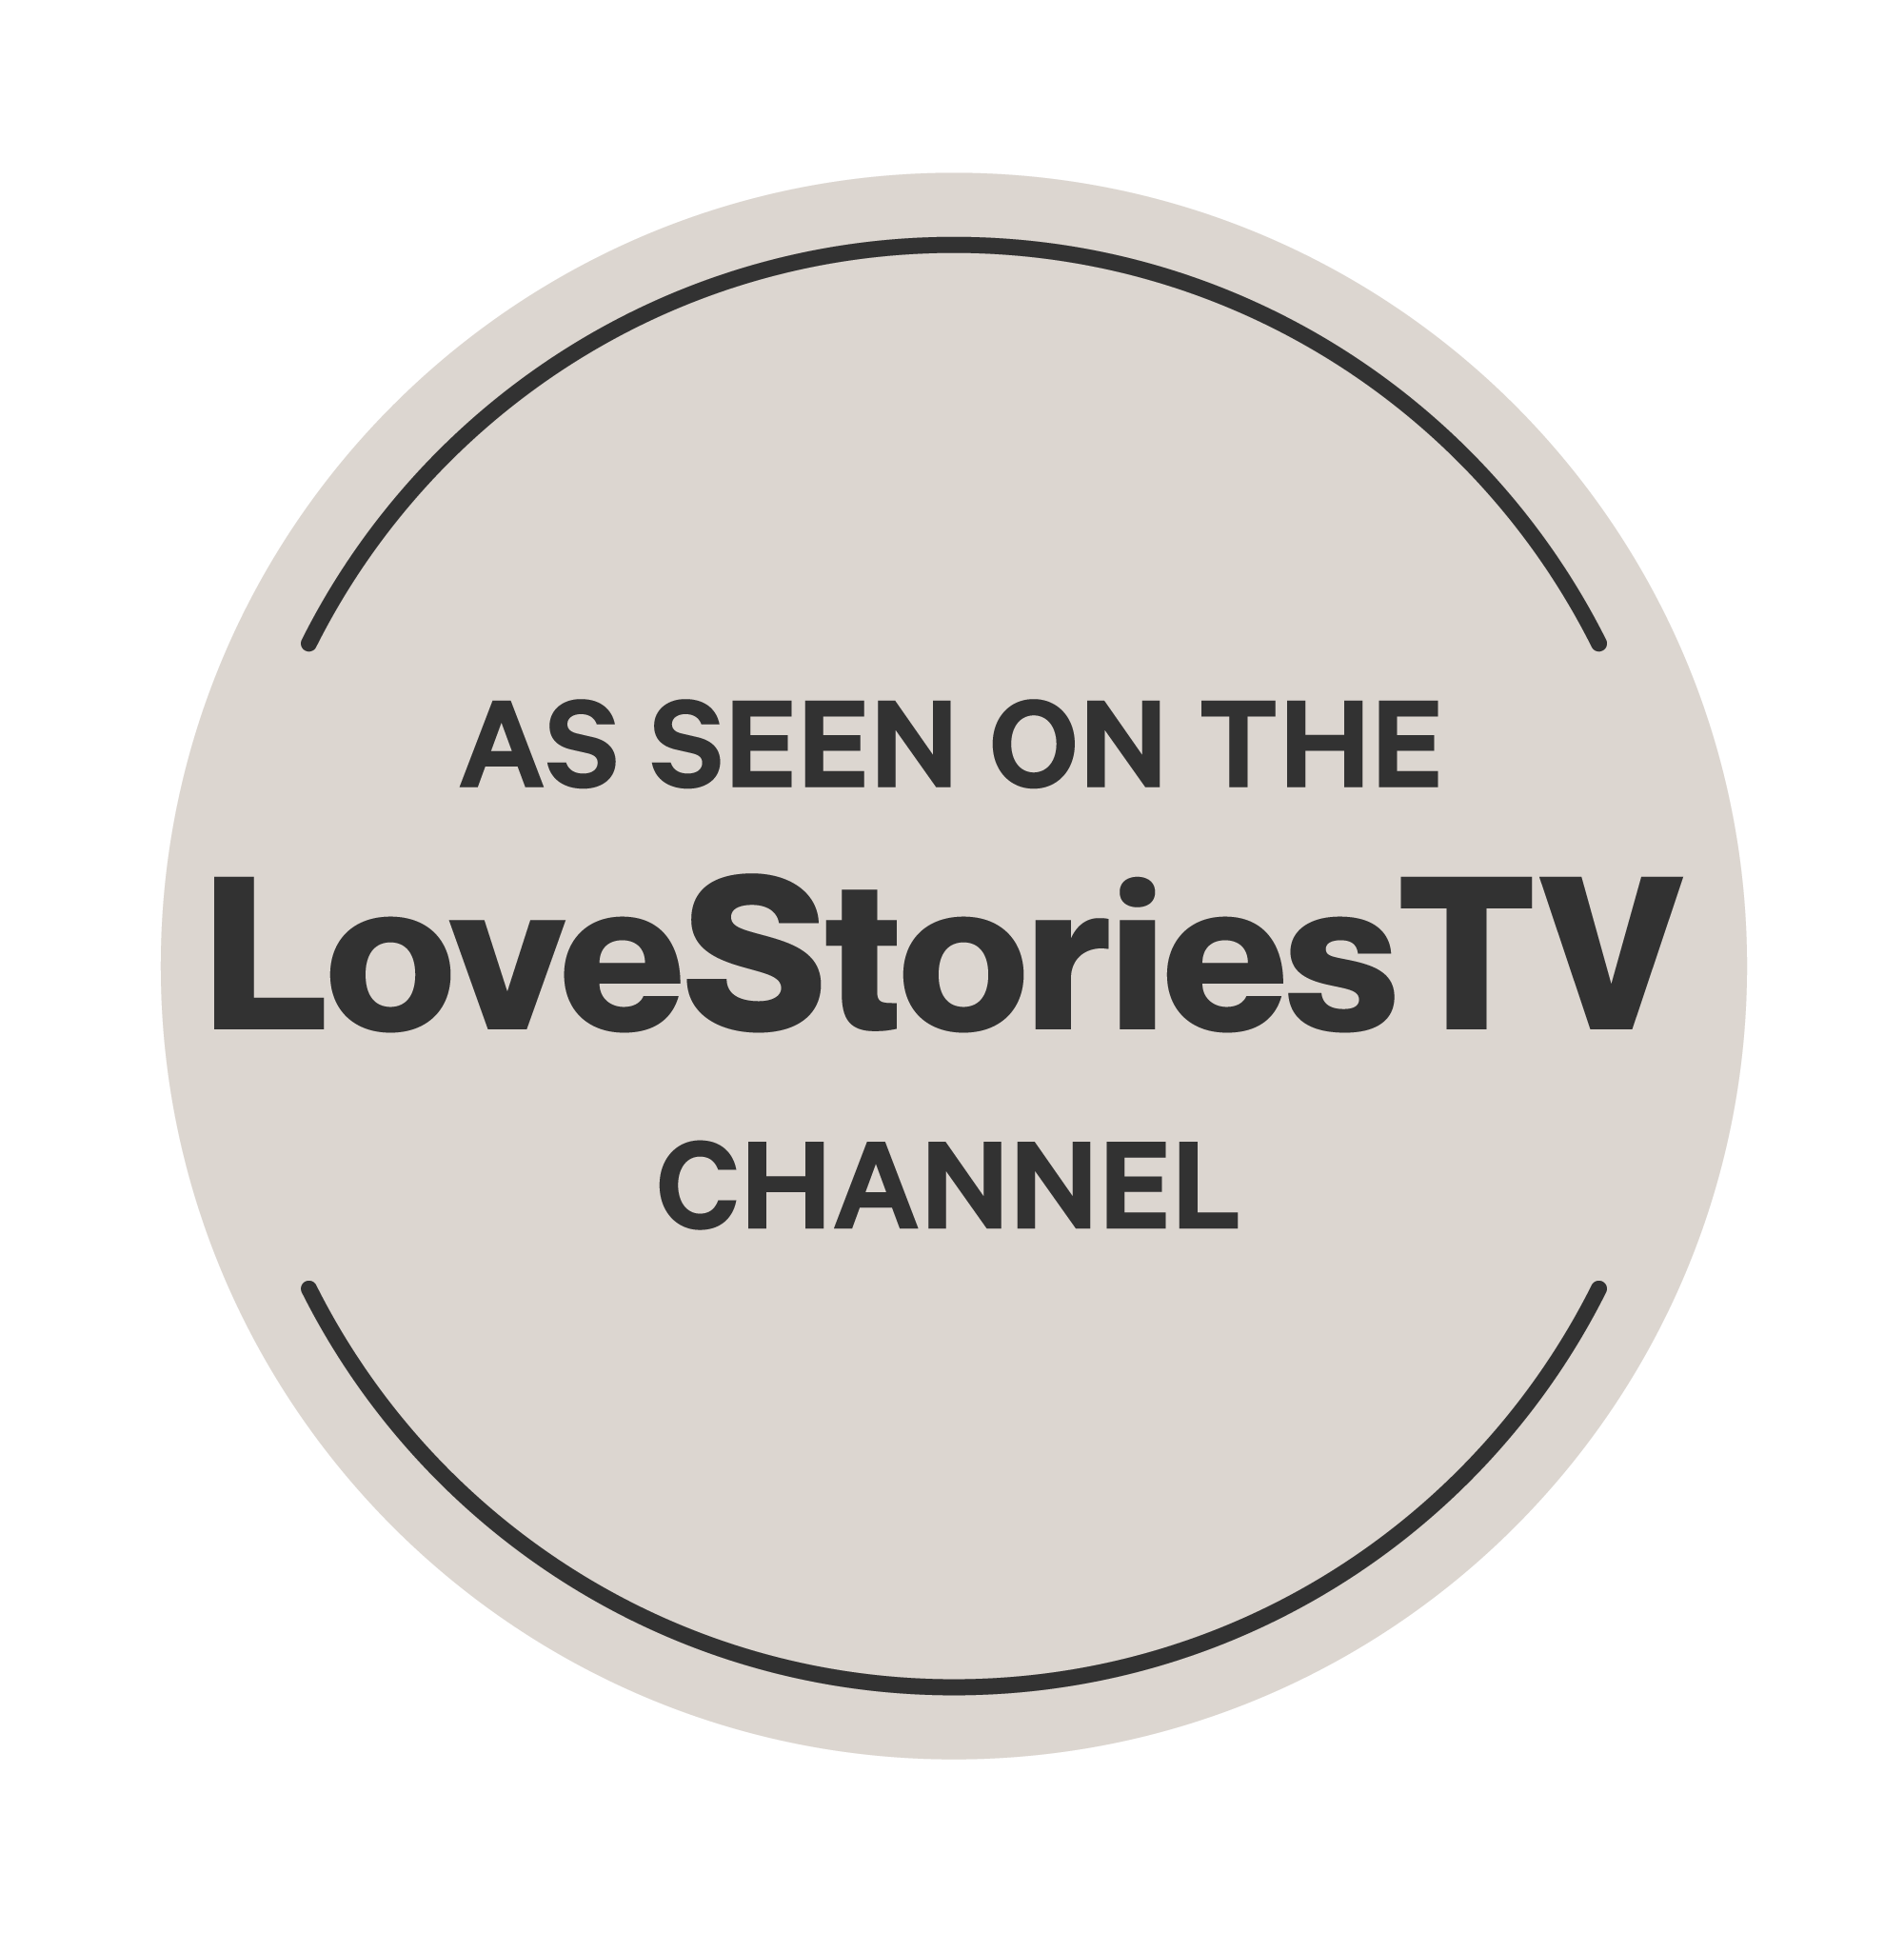 As seen on the LoveStoriesTV Channel logo